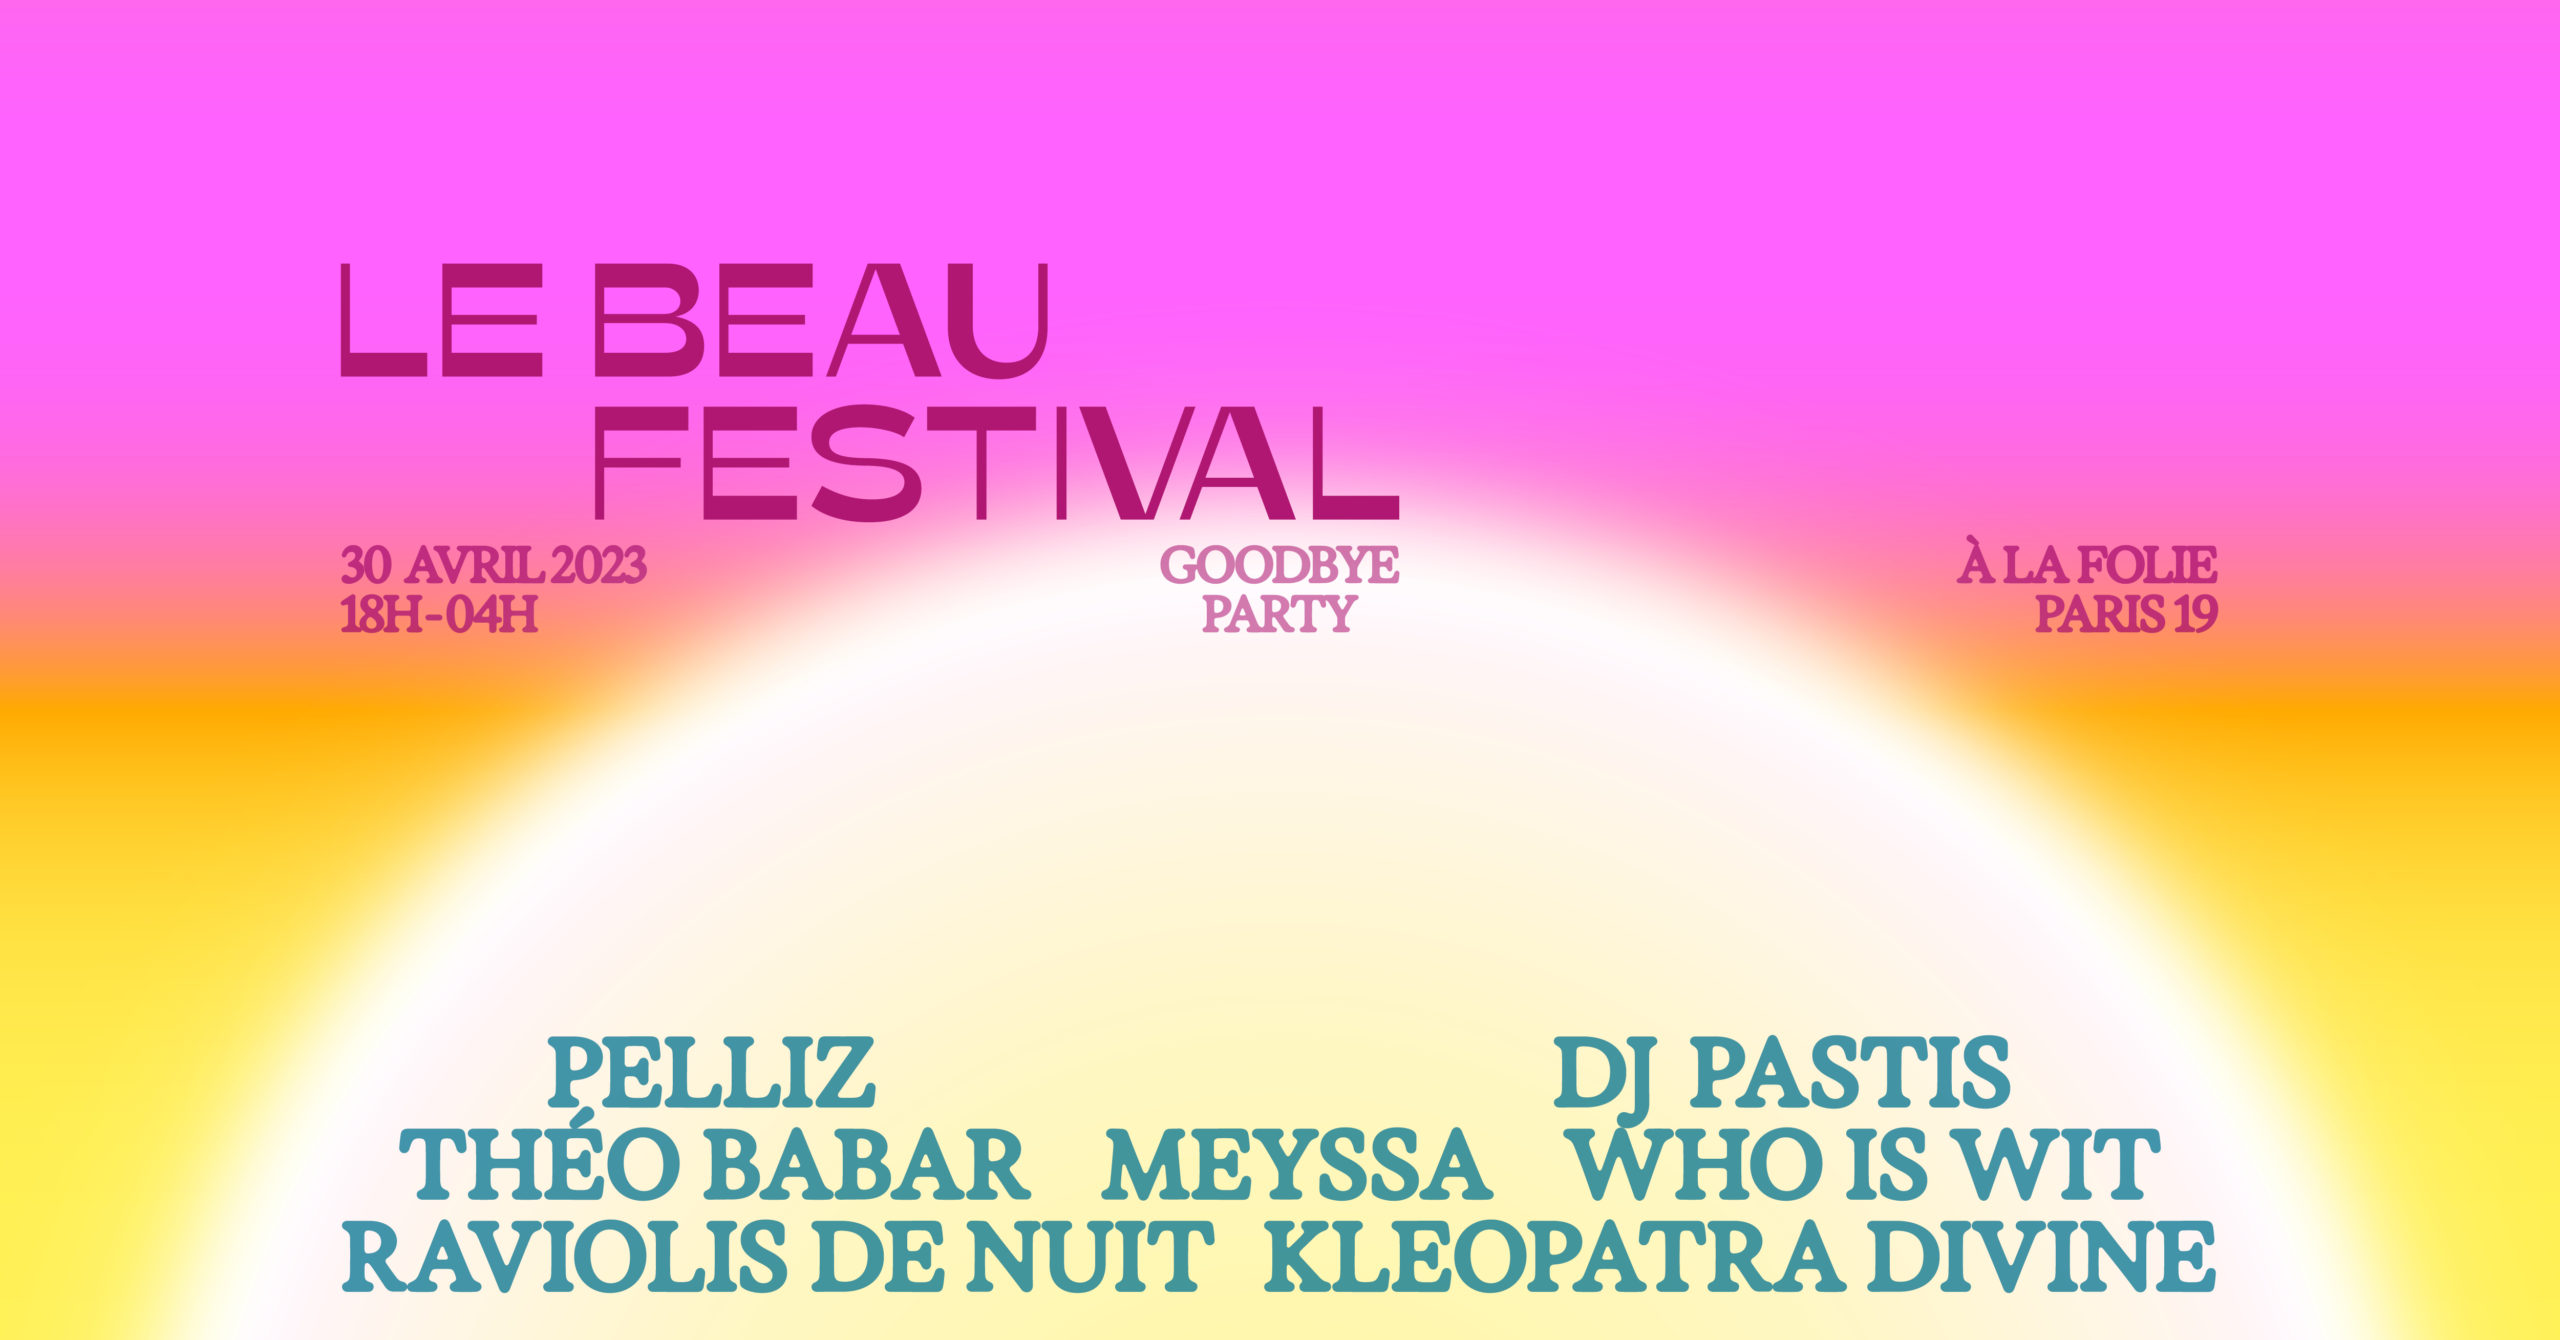 Le Beau Festival Goodbye Party